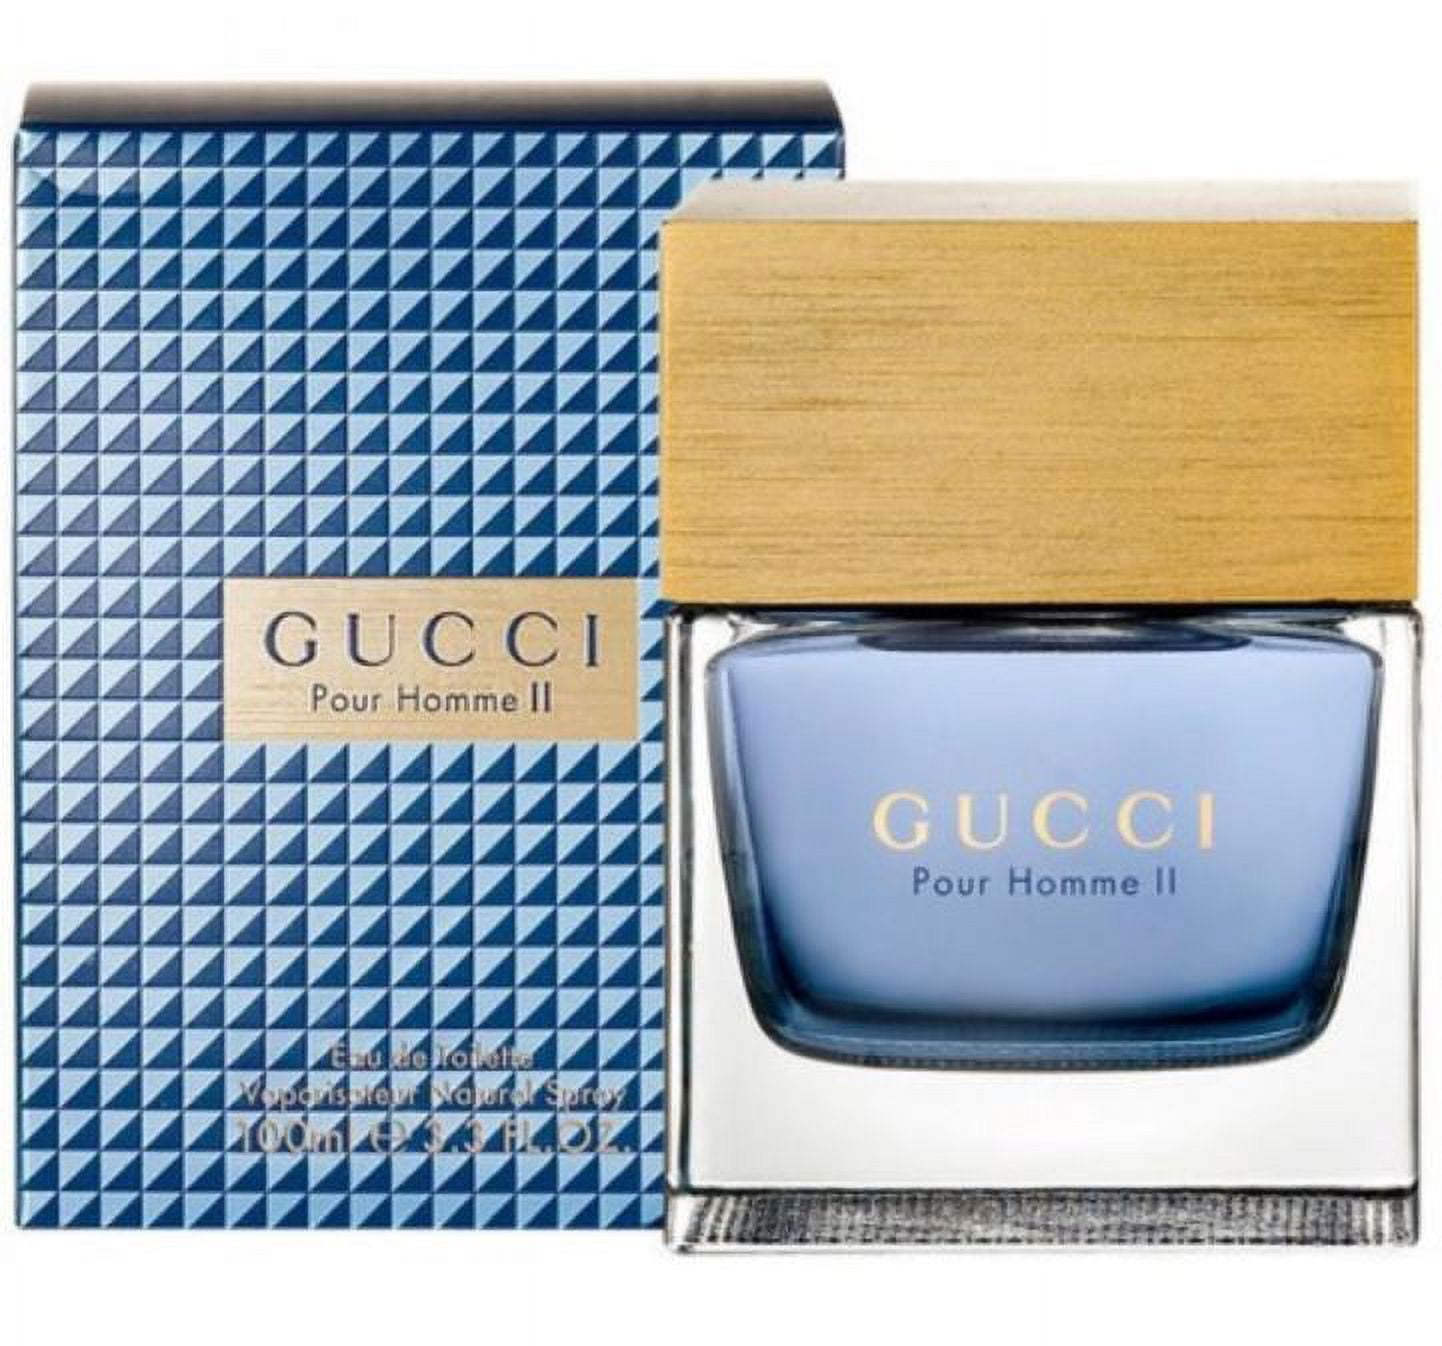 Gucci pour homme купить. Gucci "Gucci pour homme" 100 ml. Gucci pour homme II. Туалетная вода Gucci pour homme II. Gucci туалетная вода Gucci pour homme II.